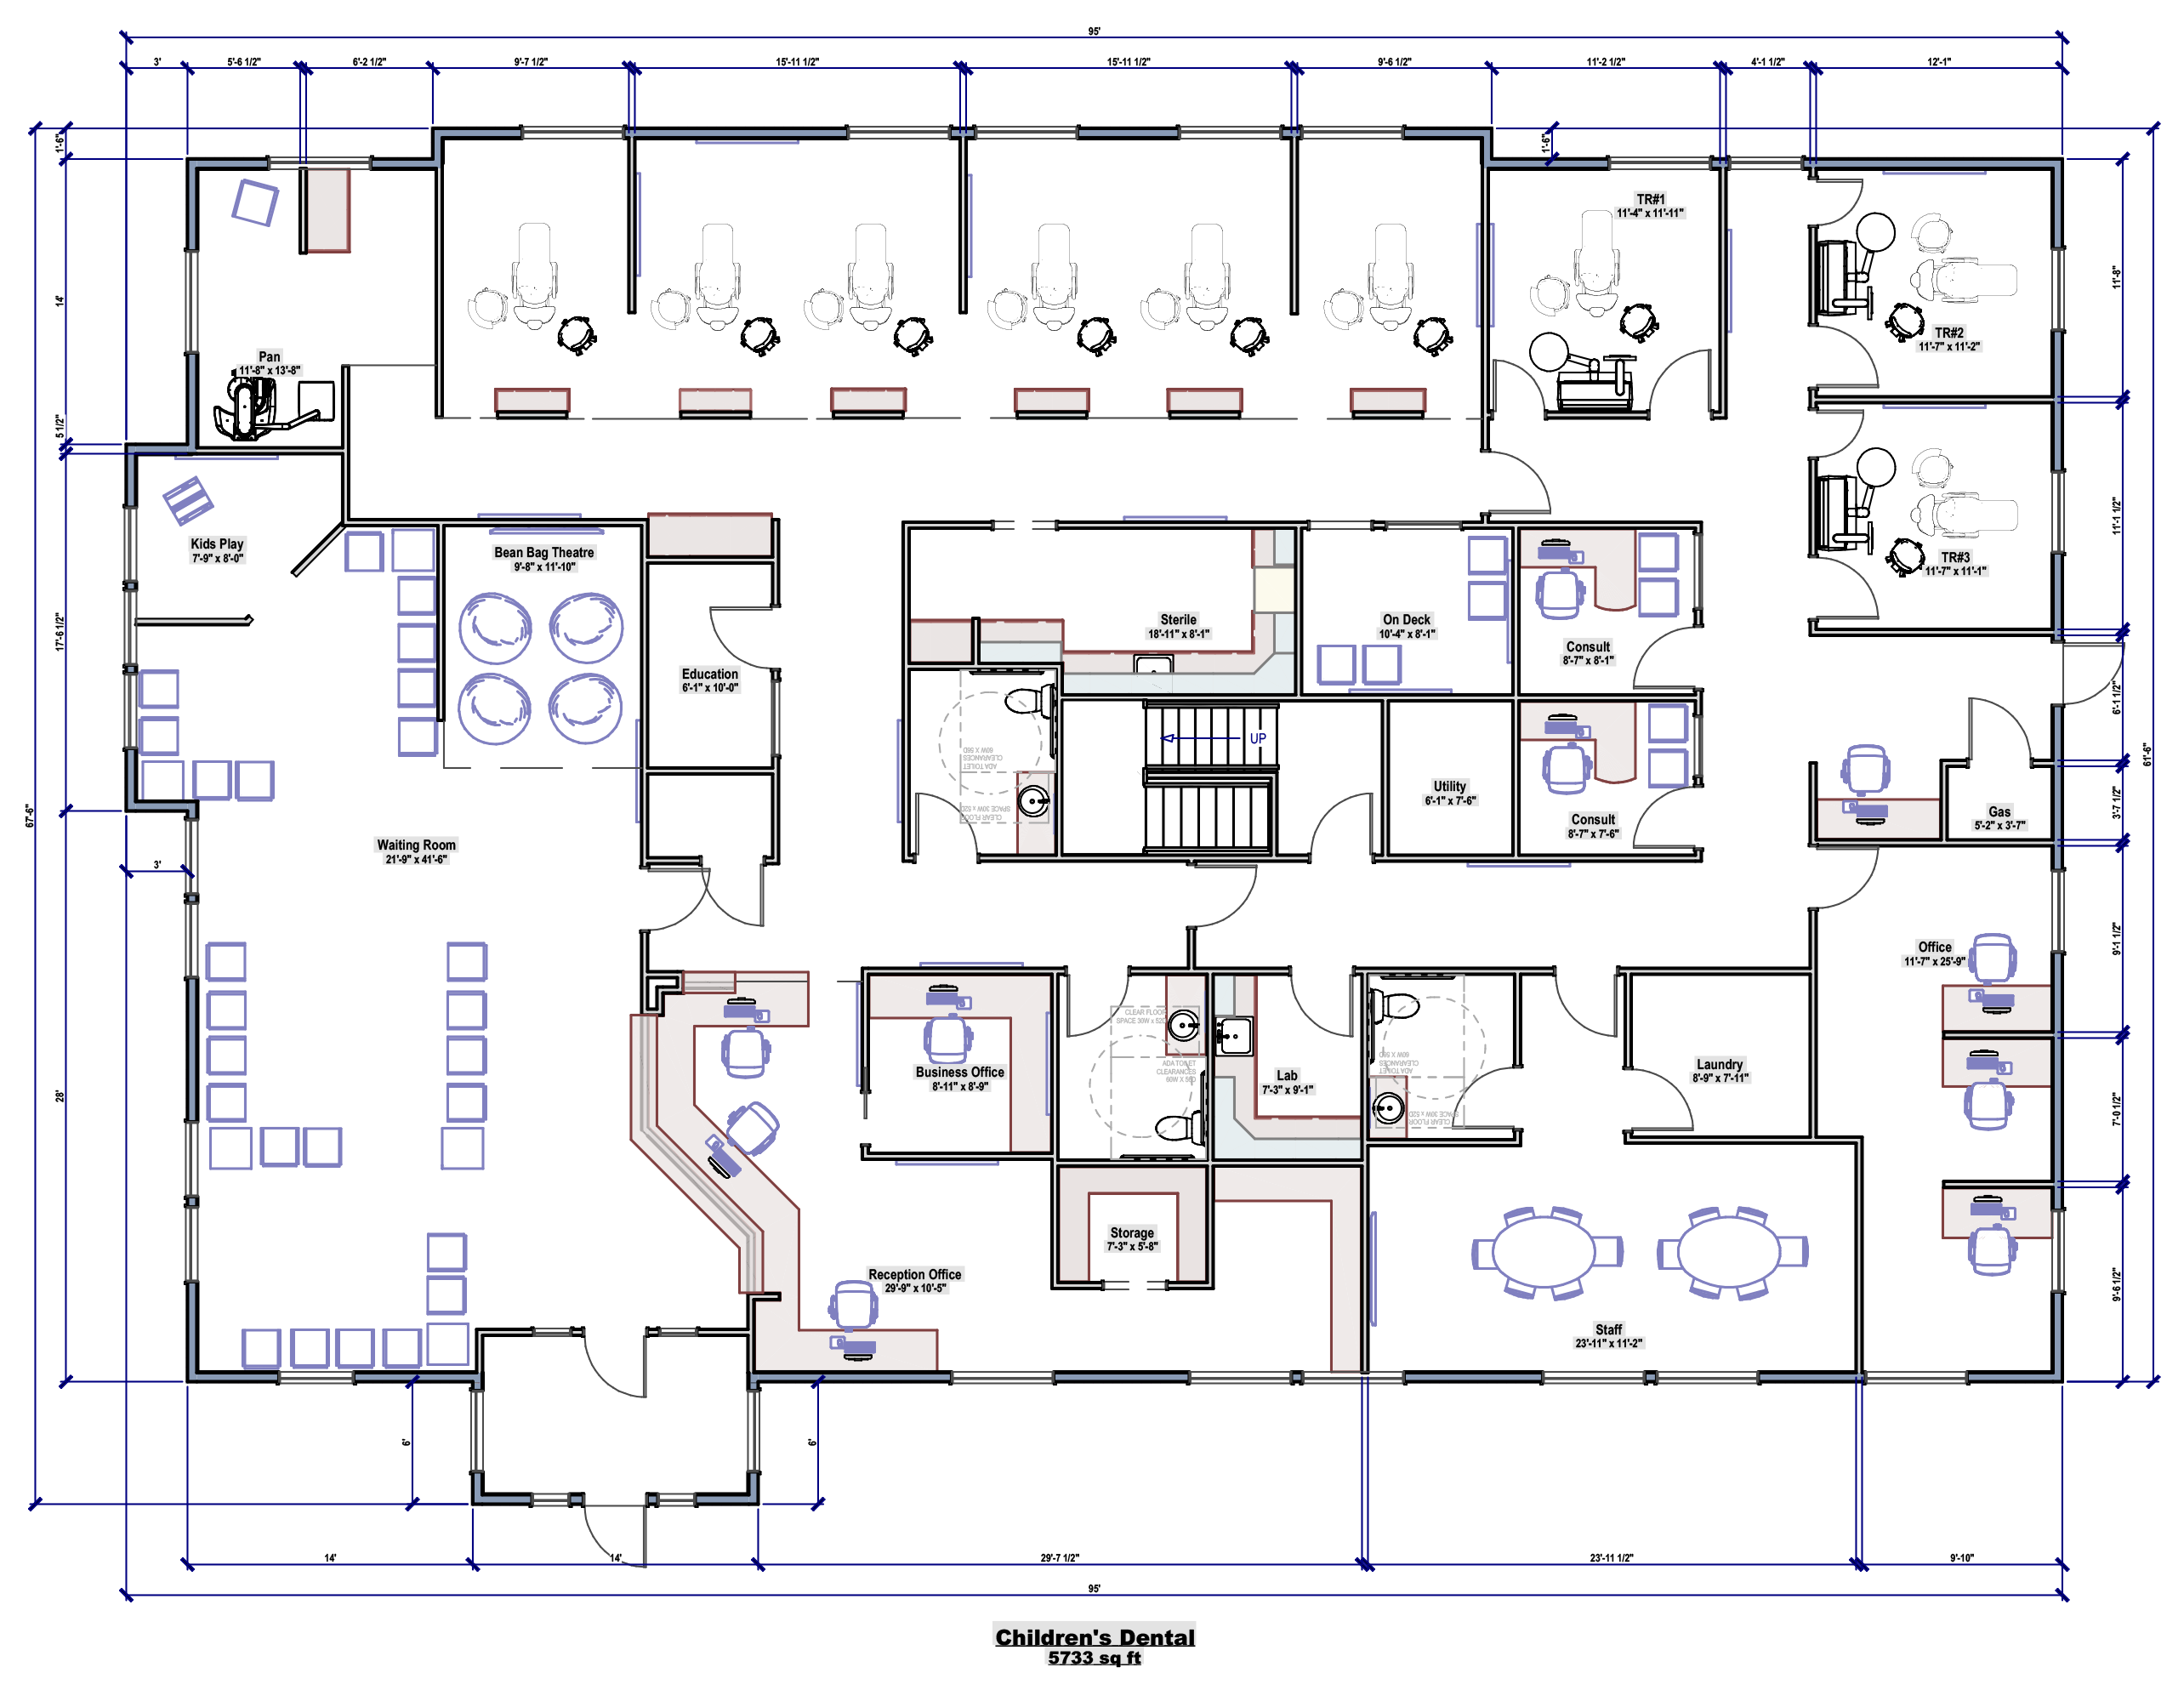 Children's Dental office planning and design – floorplan